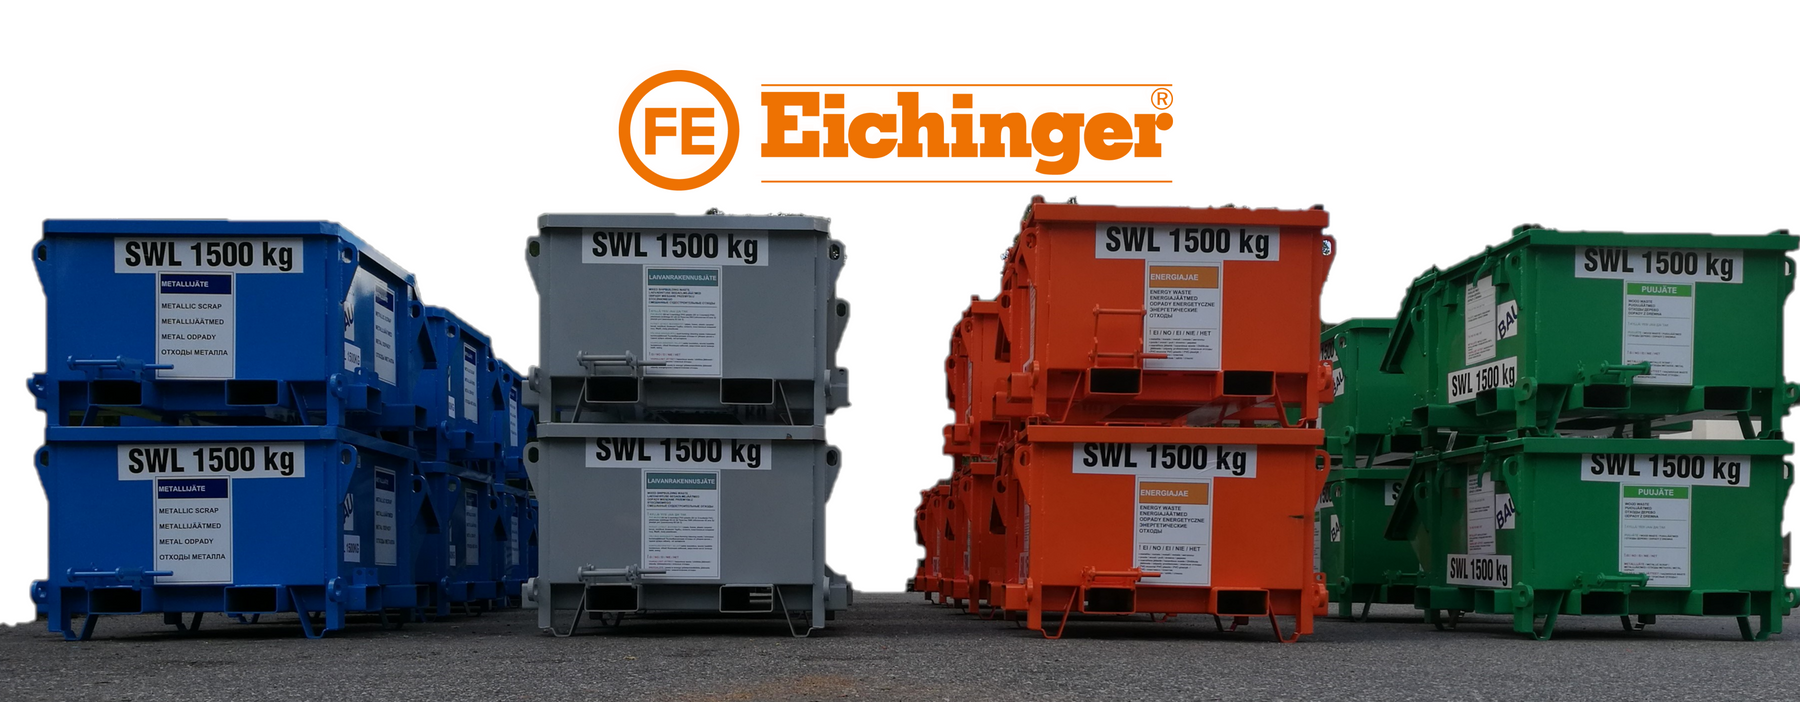 Eichinger - Monipuolisia ratkaisuja jätteiden lajitteluun